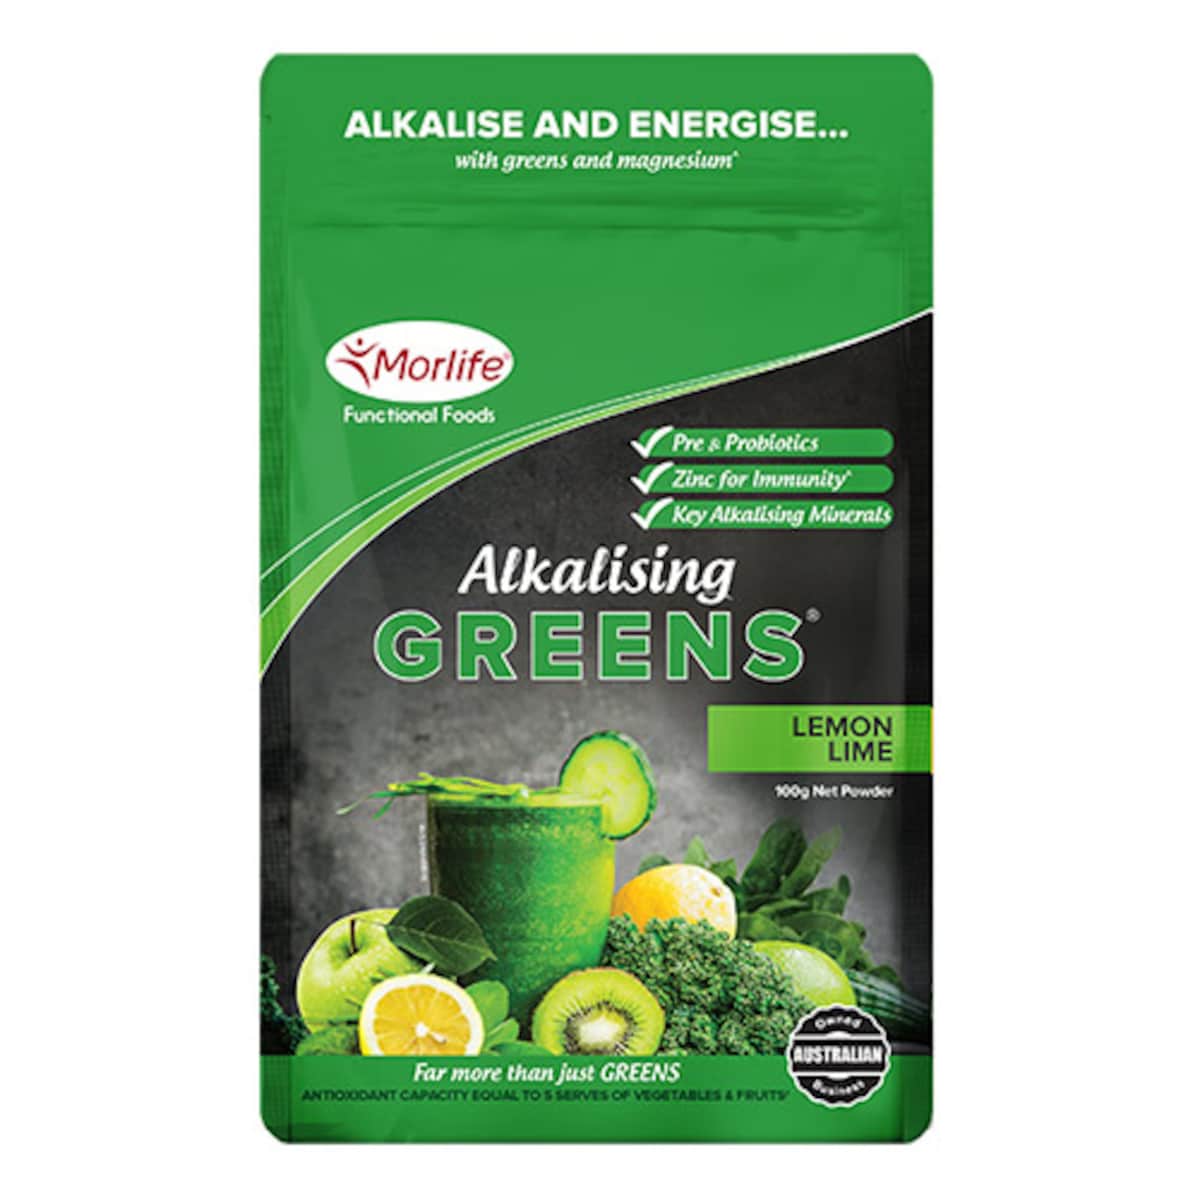 Morlife Alkalising Greens Lemon Lime 100g